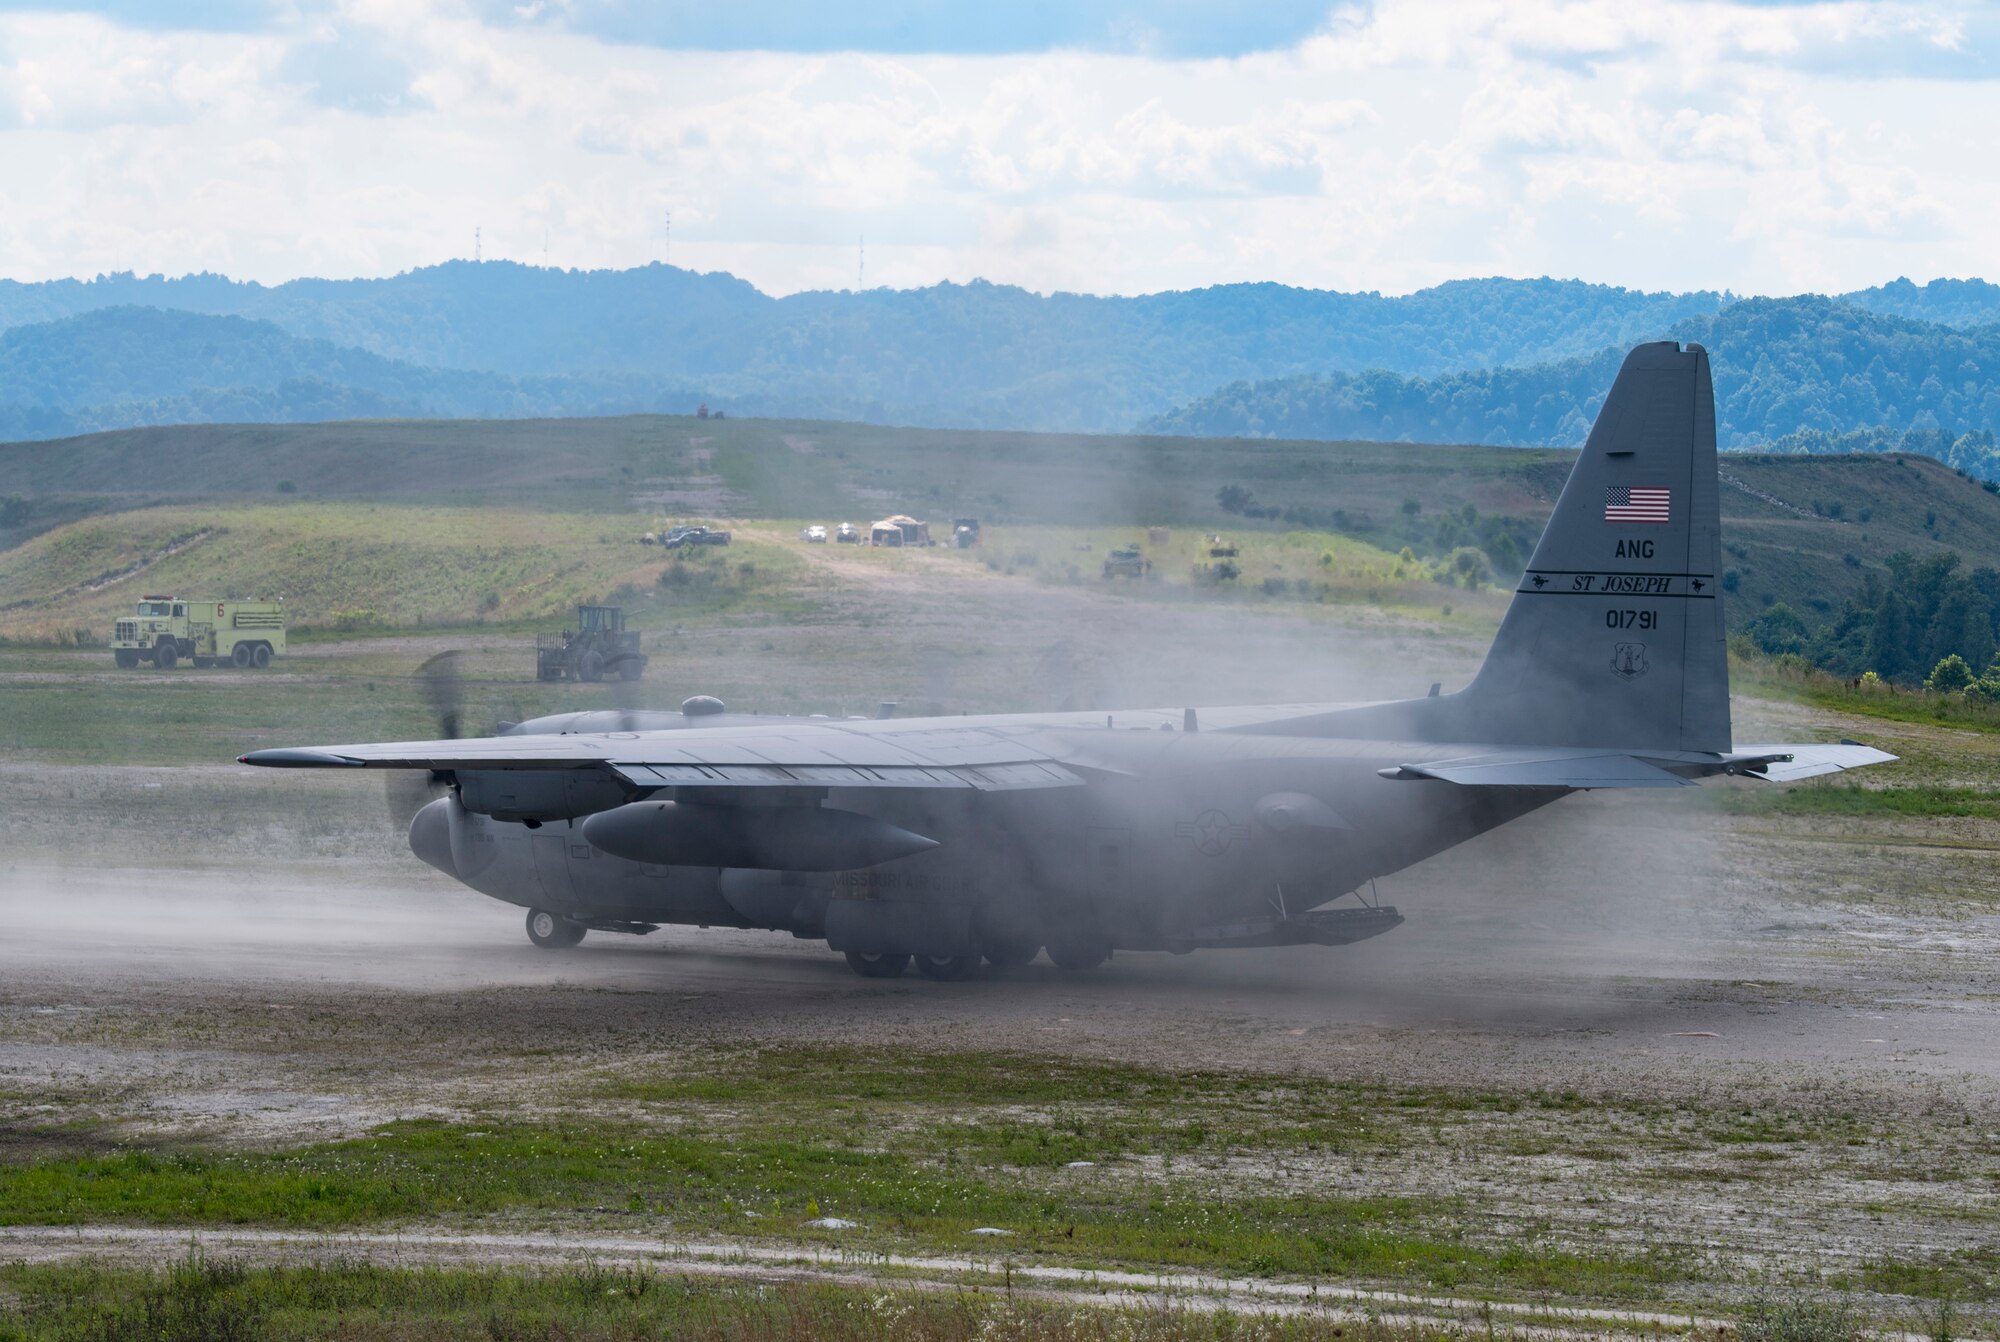 A C-130H Hercules lands on a dirt runway